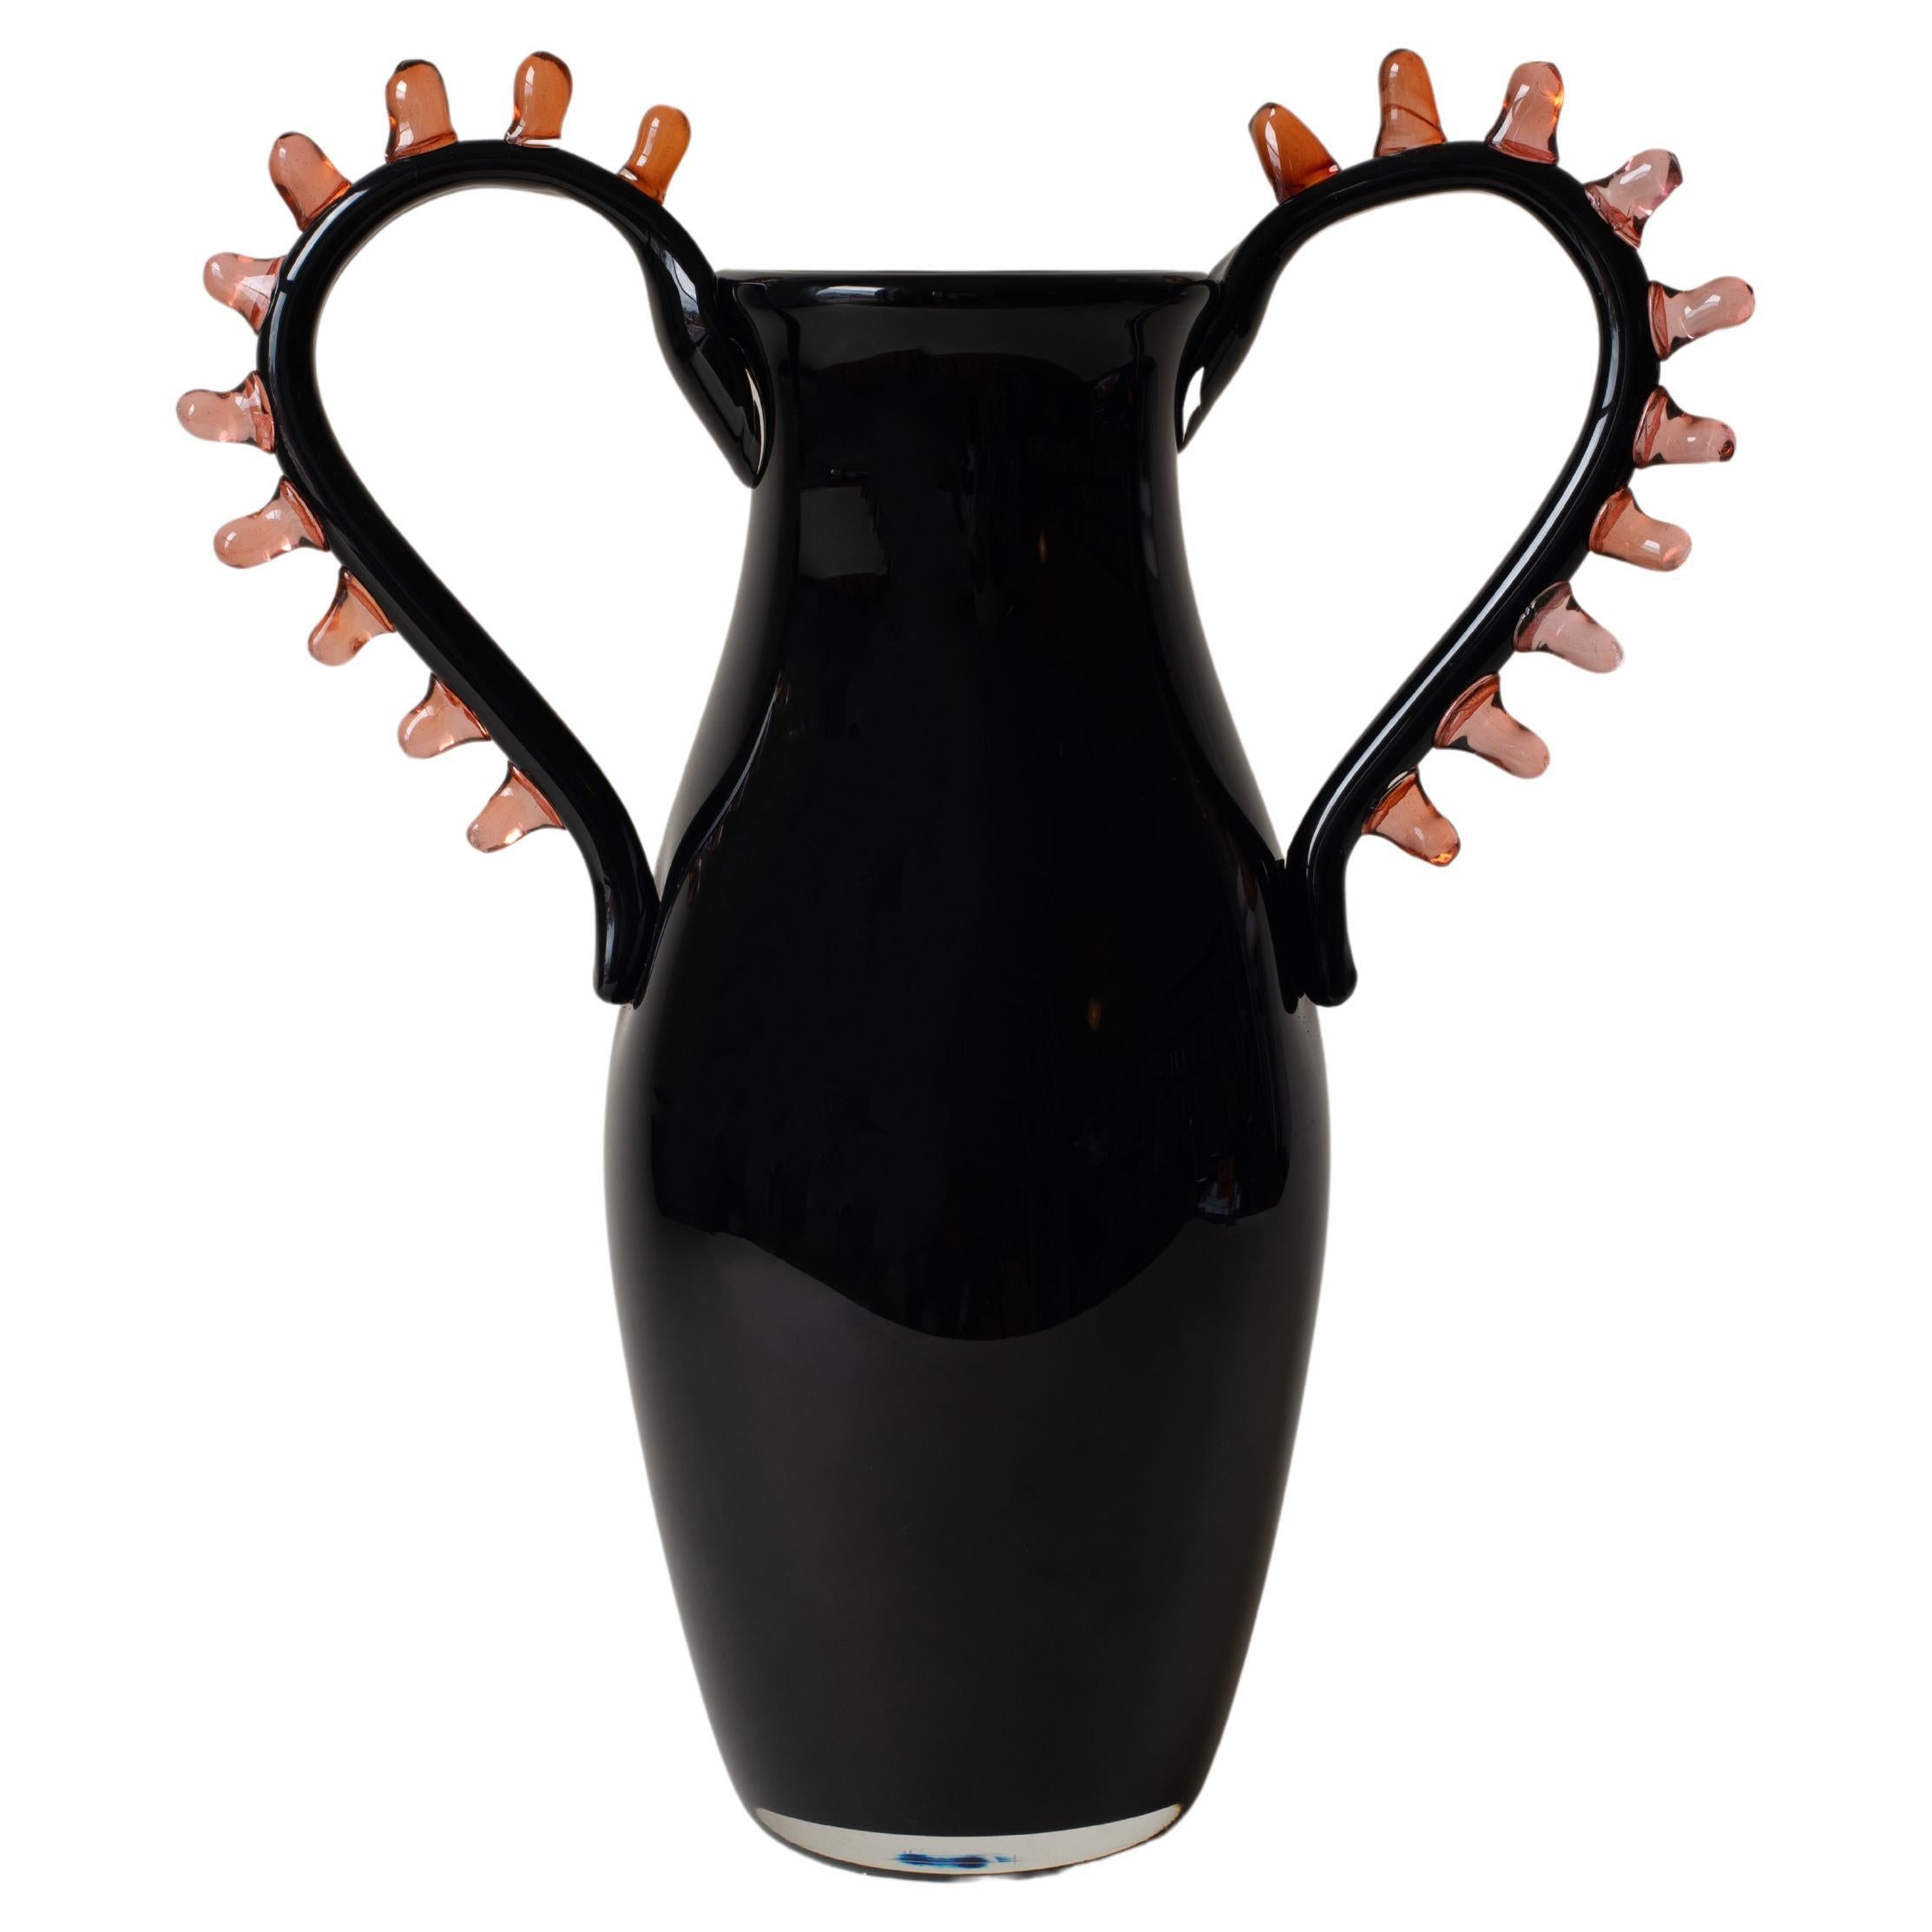 L'Aurore Hand Blown Glass Vase by Sophie Lou Jacobsen